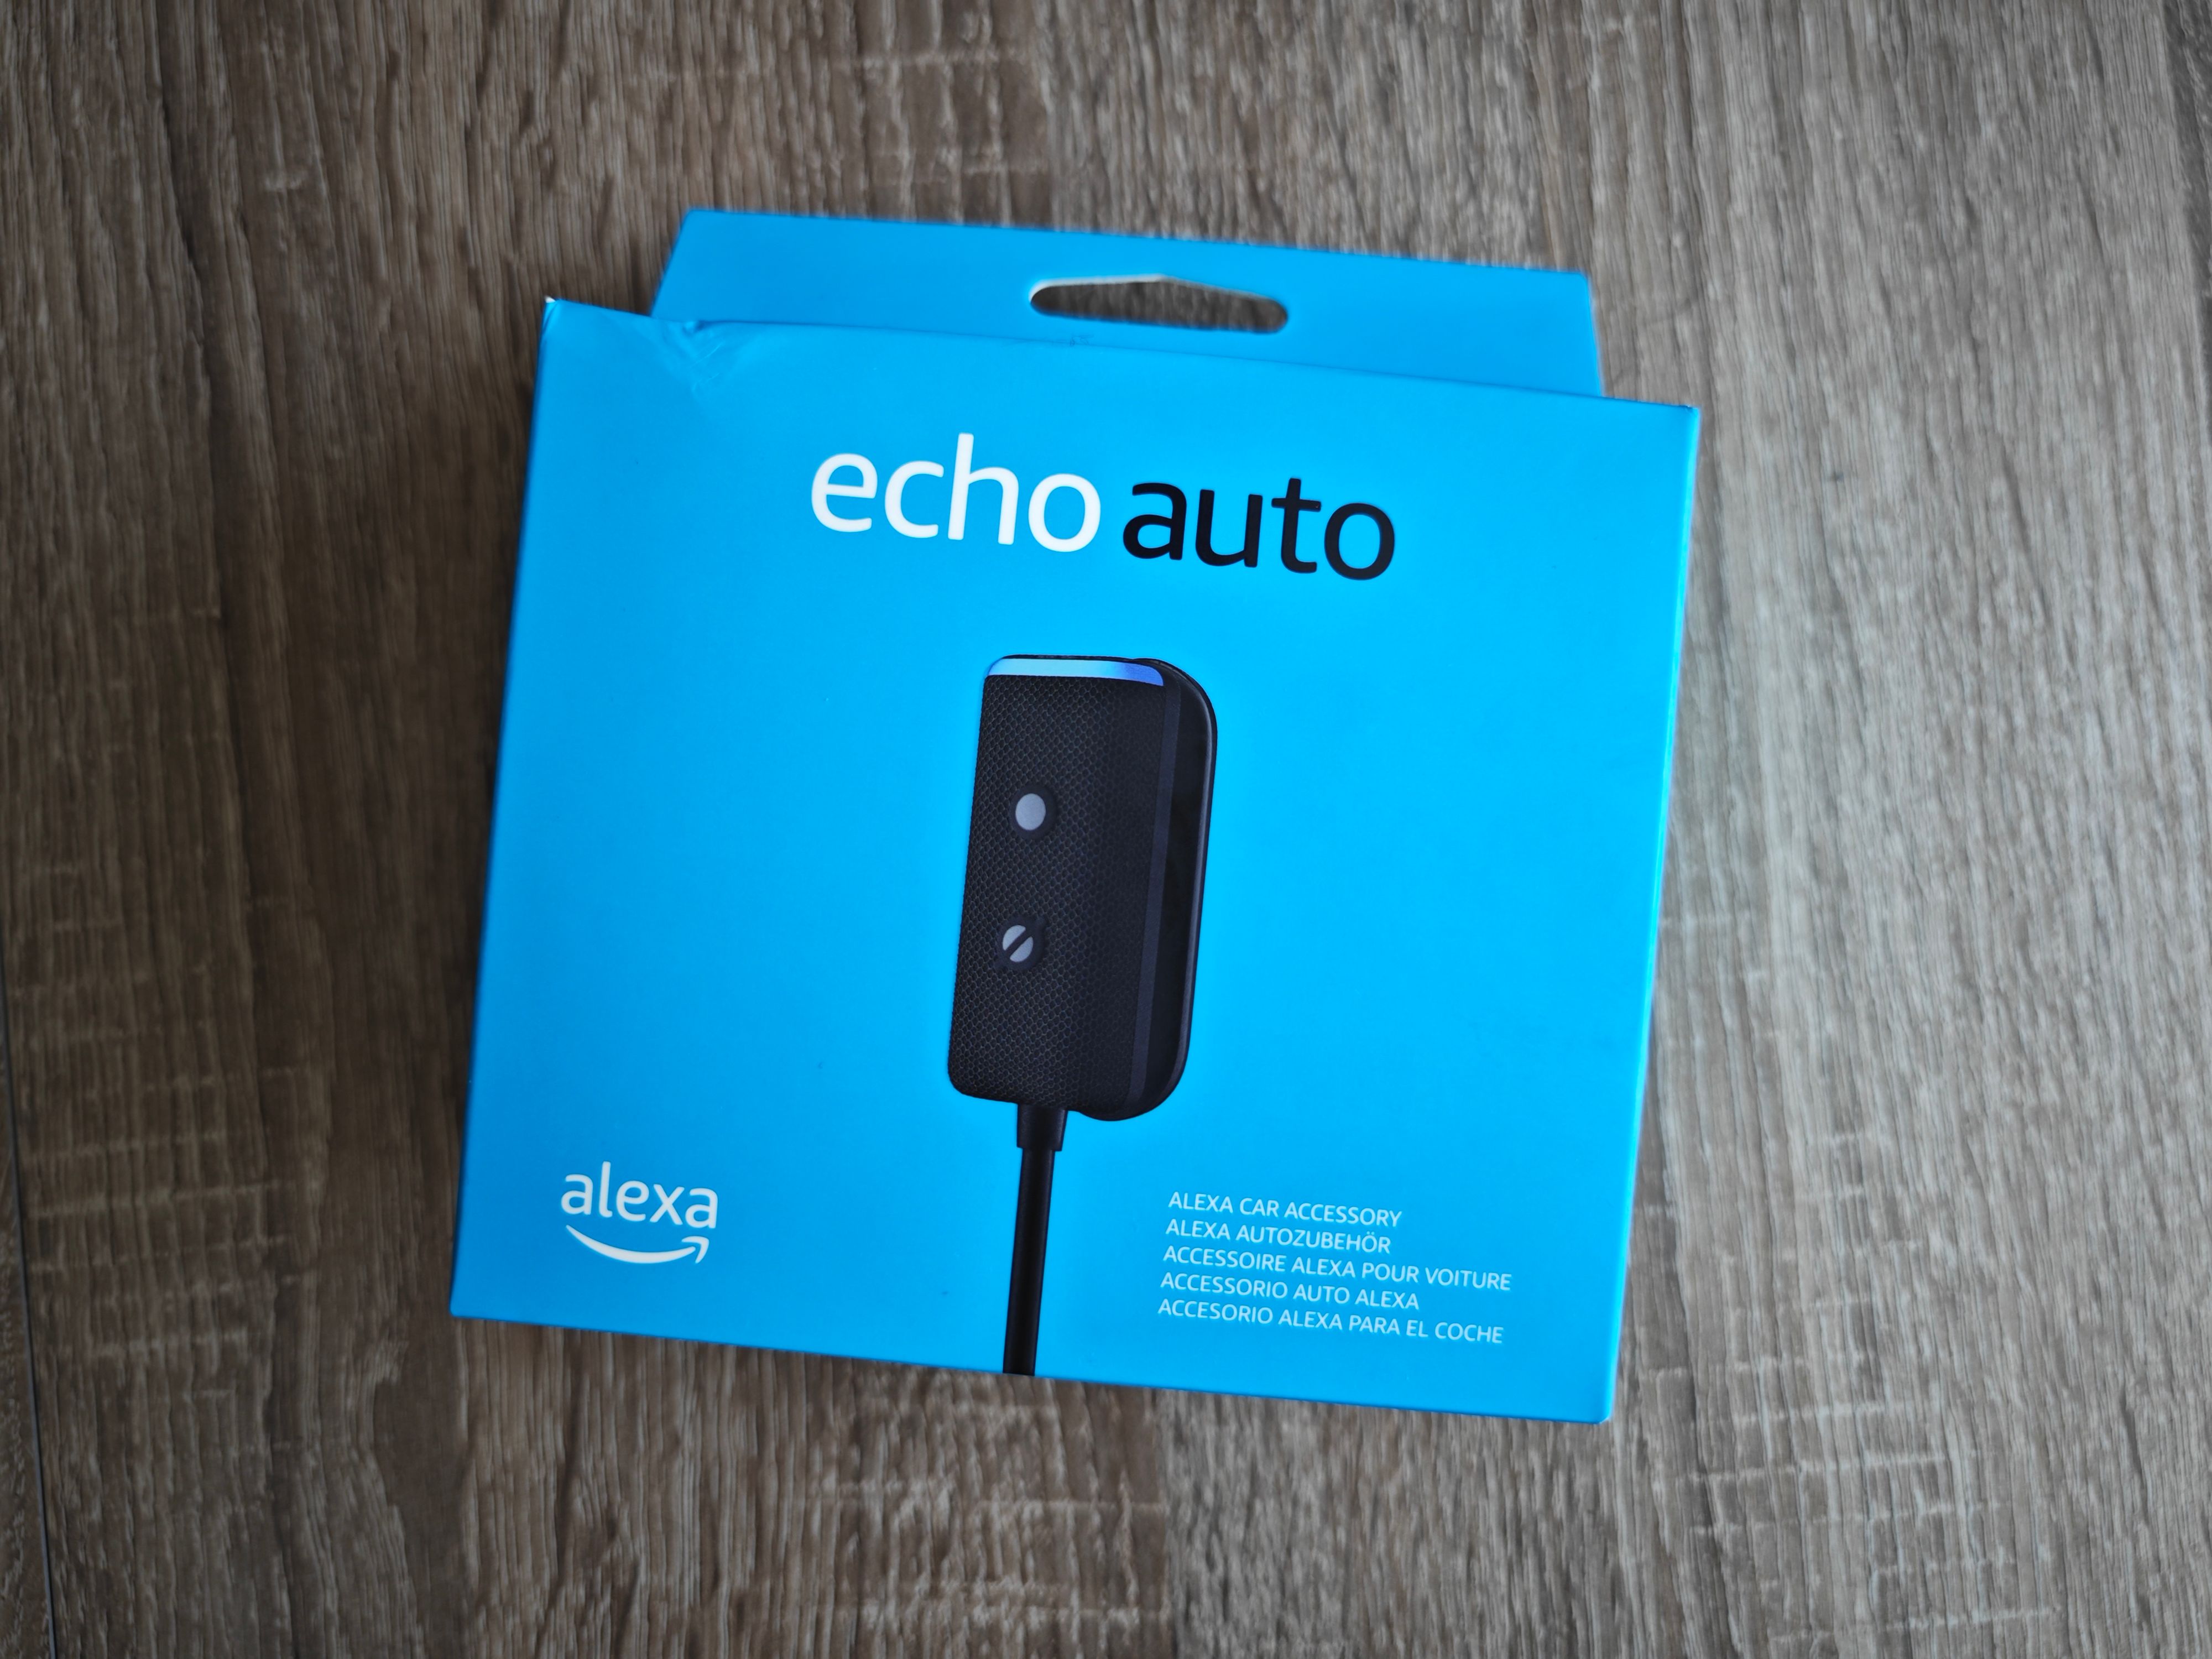 Echo Auto: Alexa fährt jetzt bei euch mit – und das 50